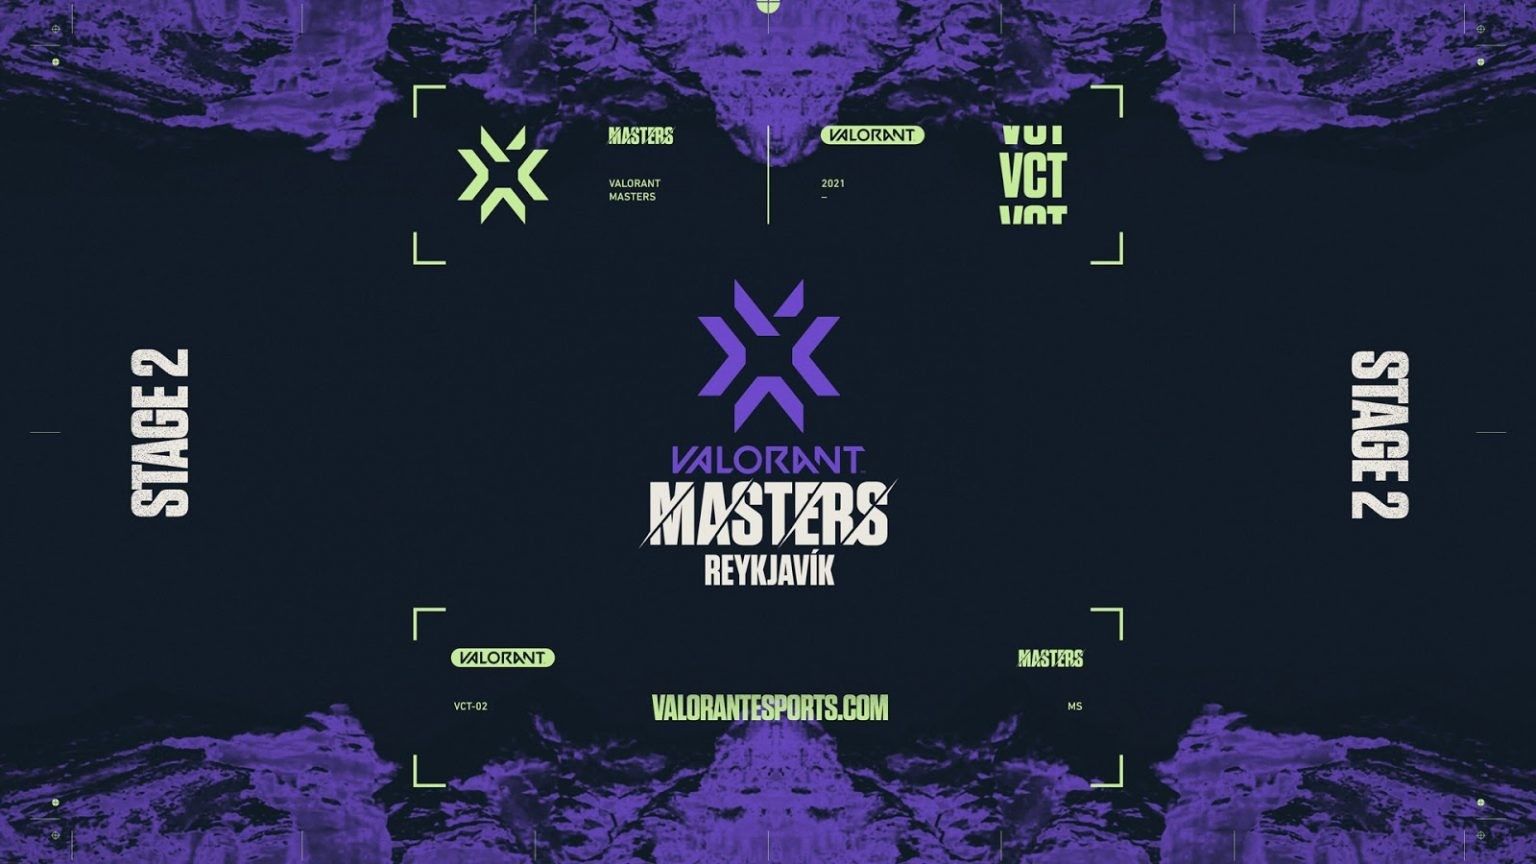 Стала известна сетка VCT 2021: Stage 2 Masters — призовой фонд турнира составит 600 тыс долларов